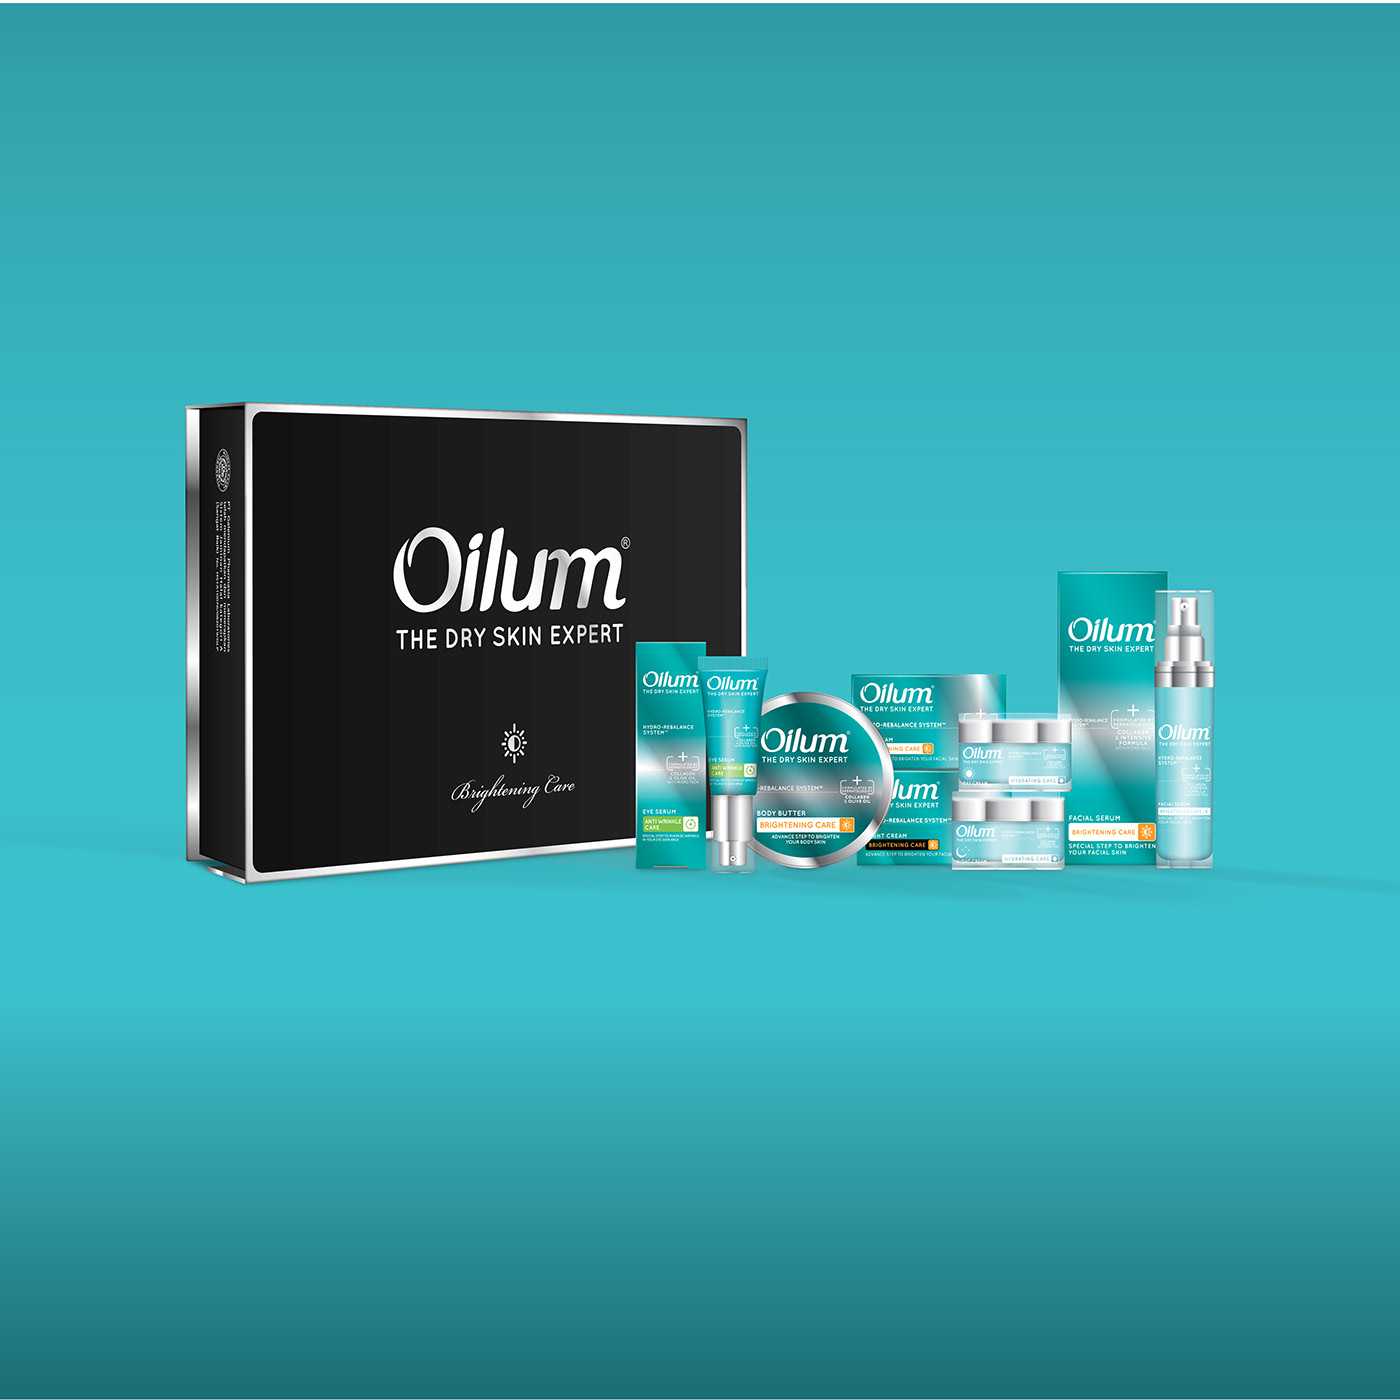 cosmeceutical design galenium oilum Packaging premium skincare tosca